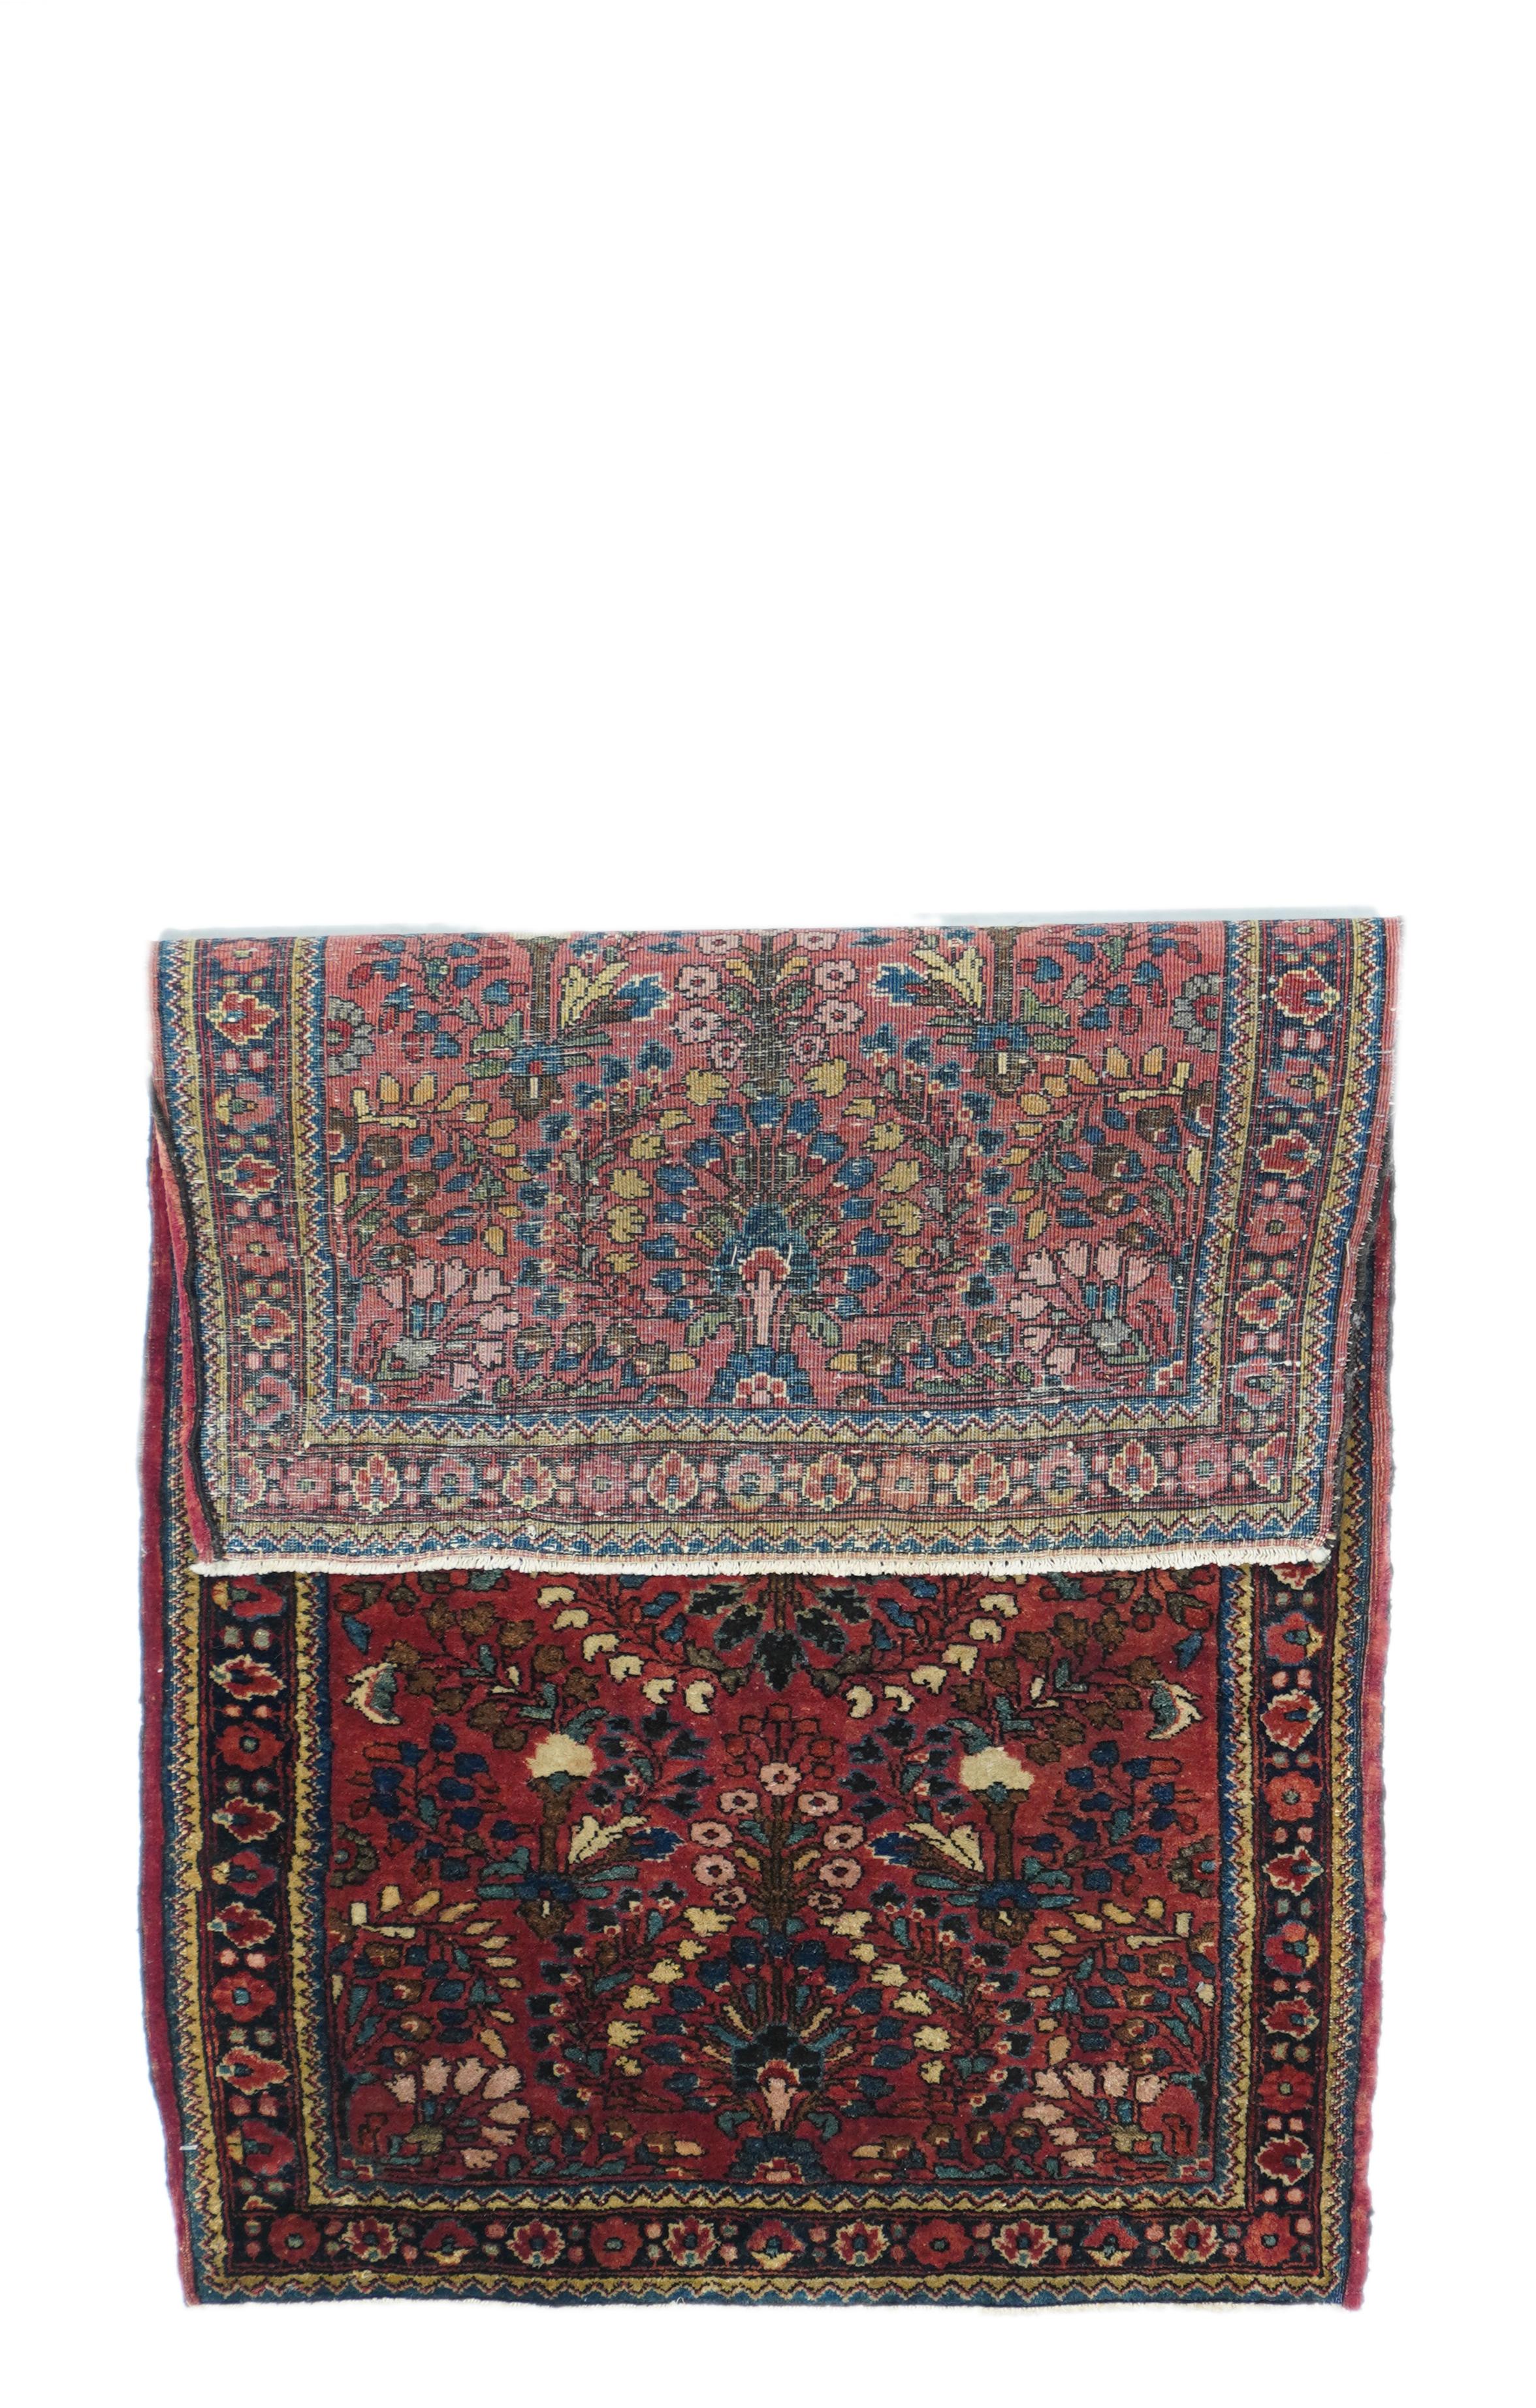 Antique Sarouk rug. Mrasures: 2.1'' x 3.11''.